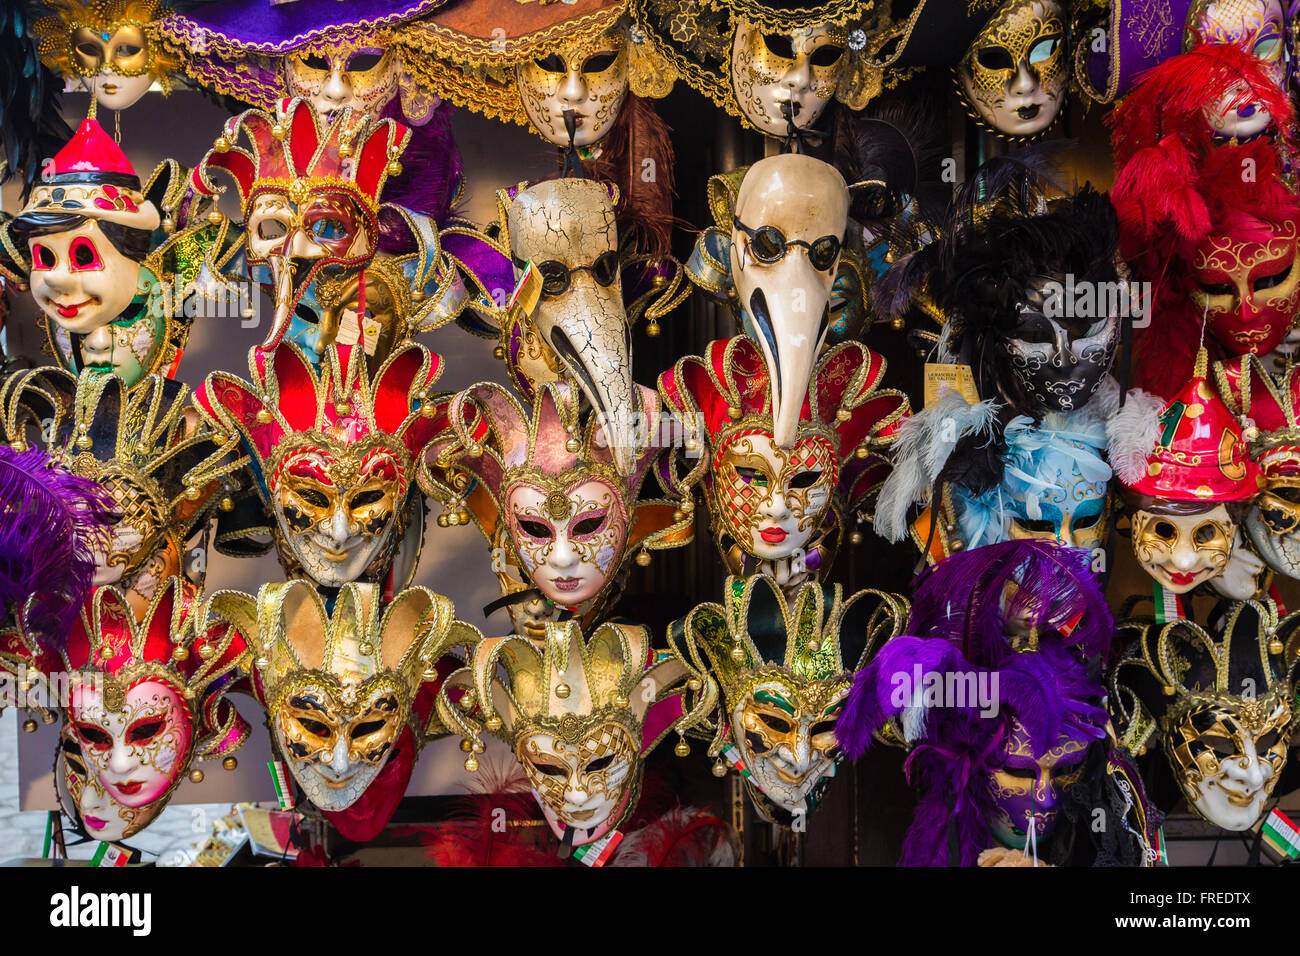 Venezianische Masken auf einem Verkaufsstand, Venedig, Italien Stockfoto